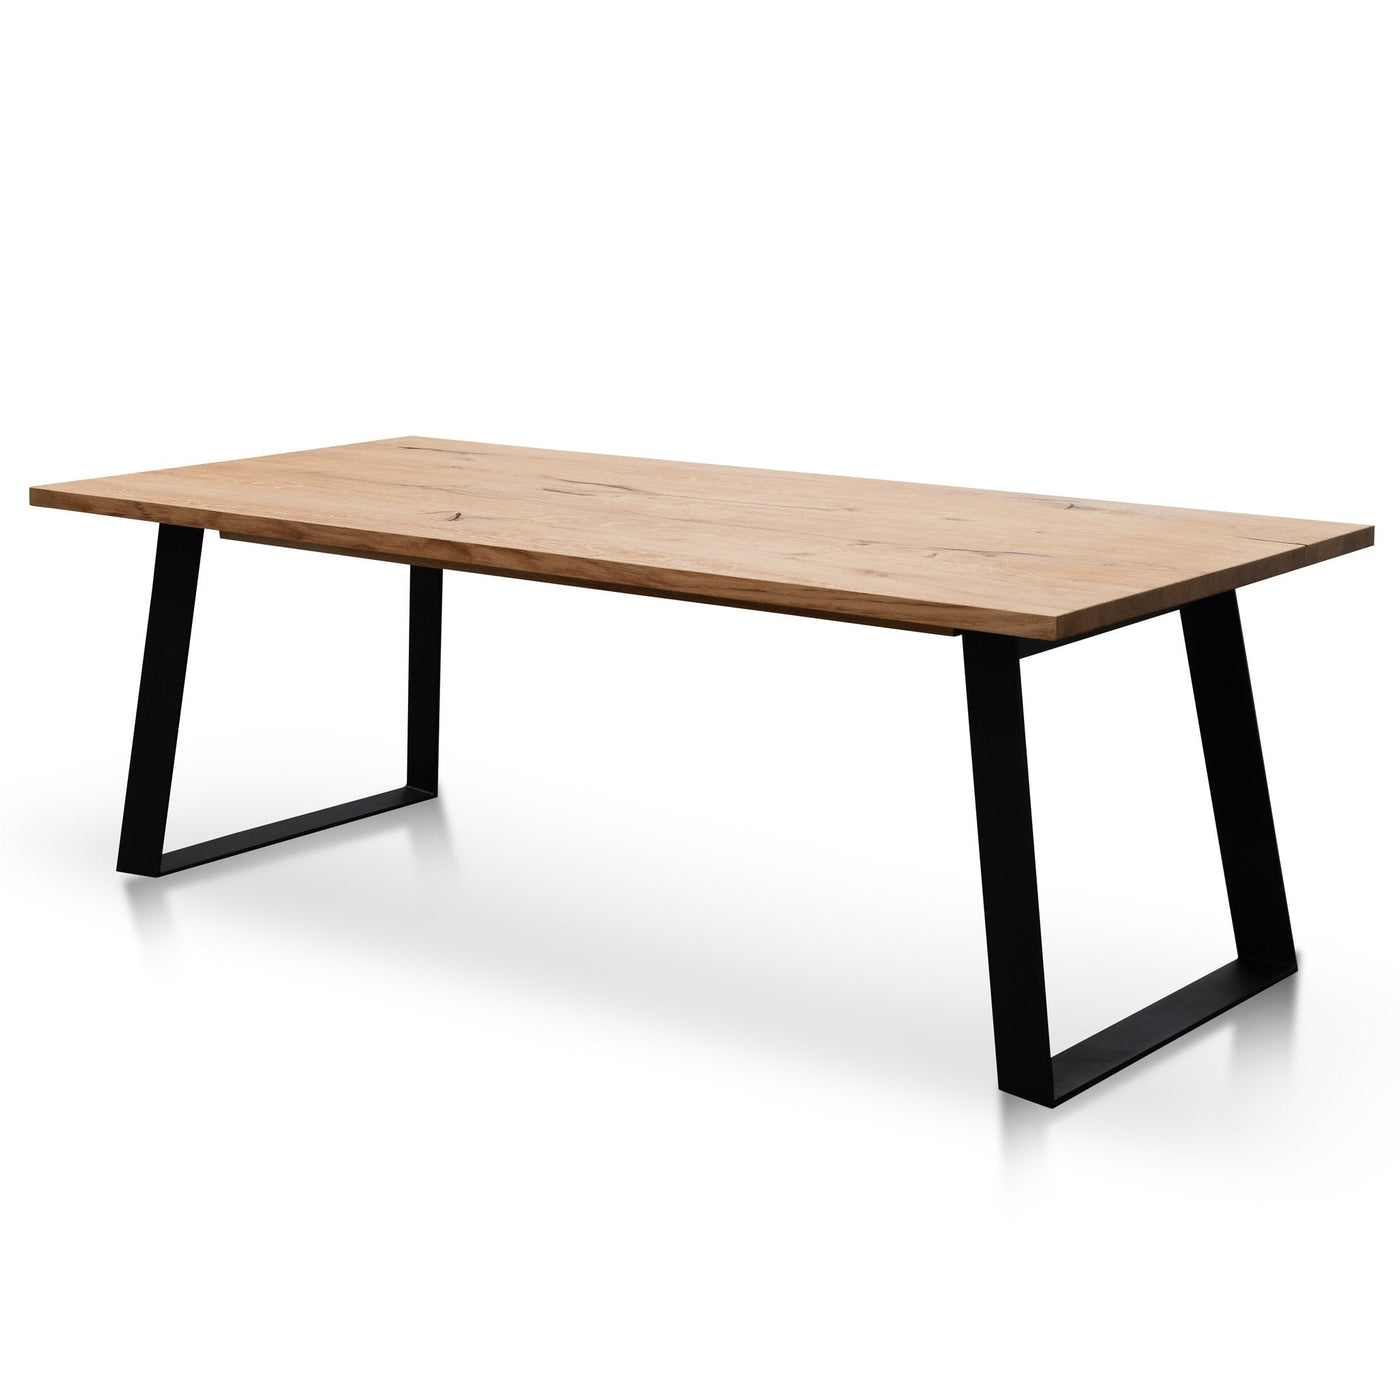 2.2m Straight Top Dining table - Rustic Oak Veneer - Metal Legs